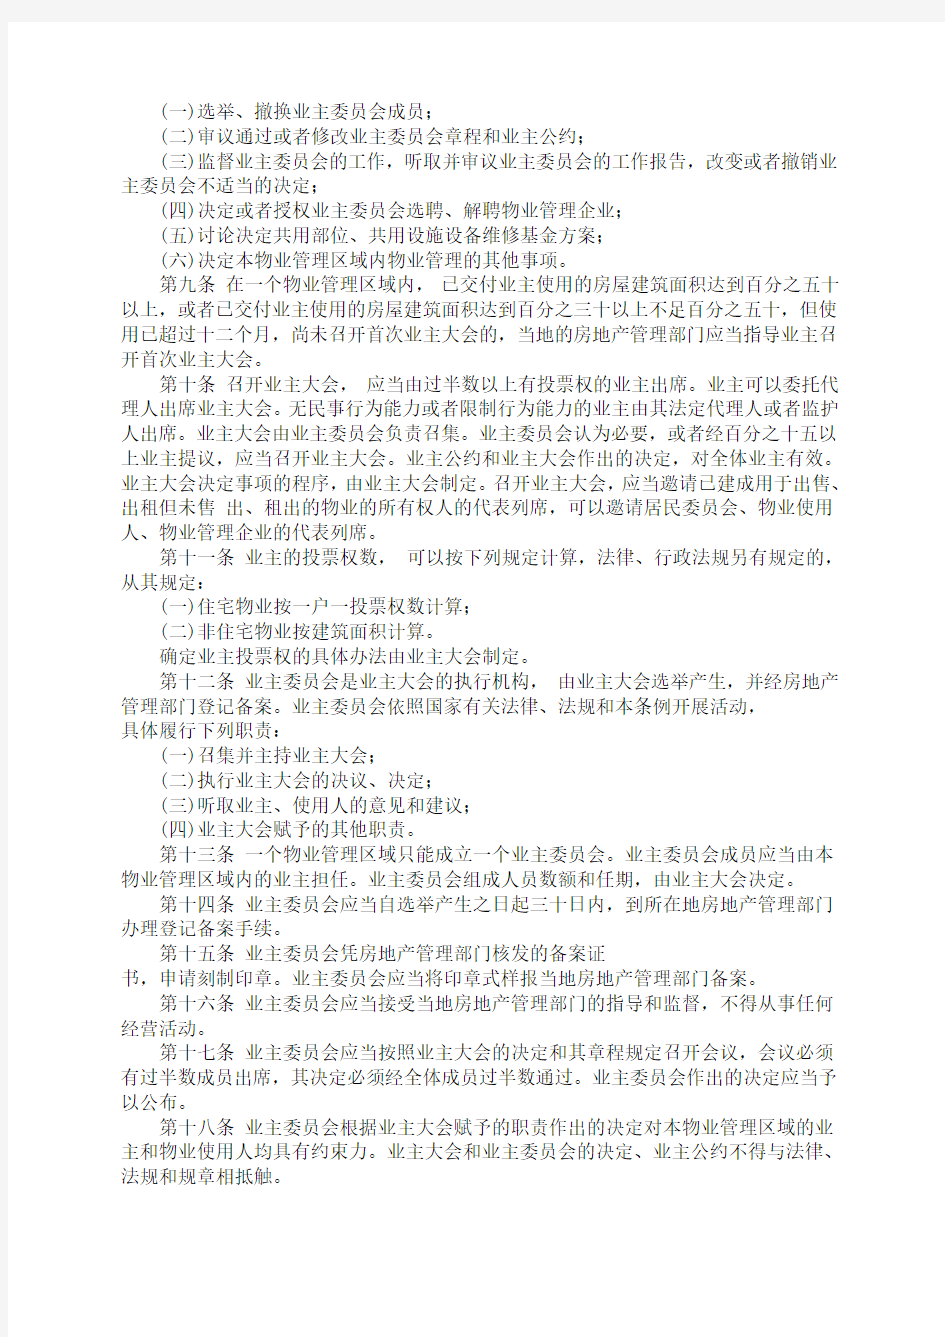 河南省物业管理条例(2001)